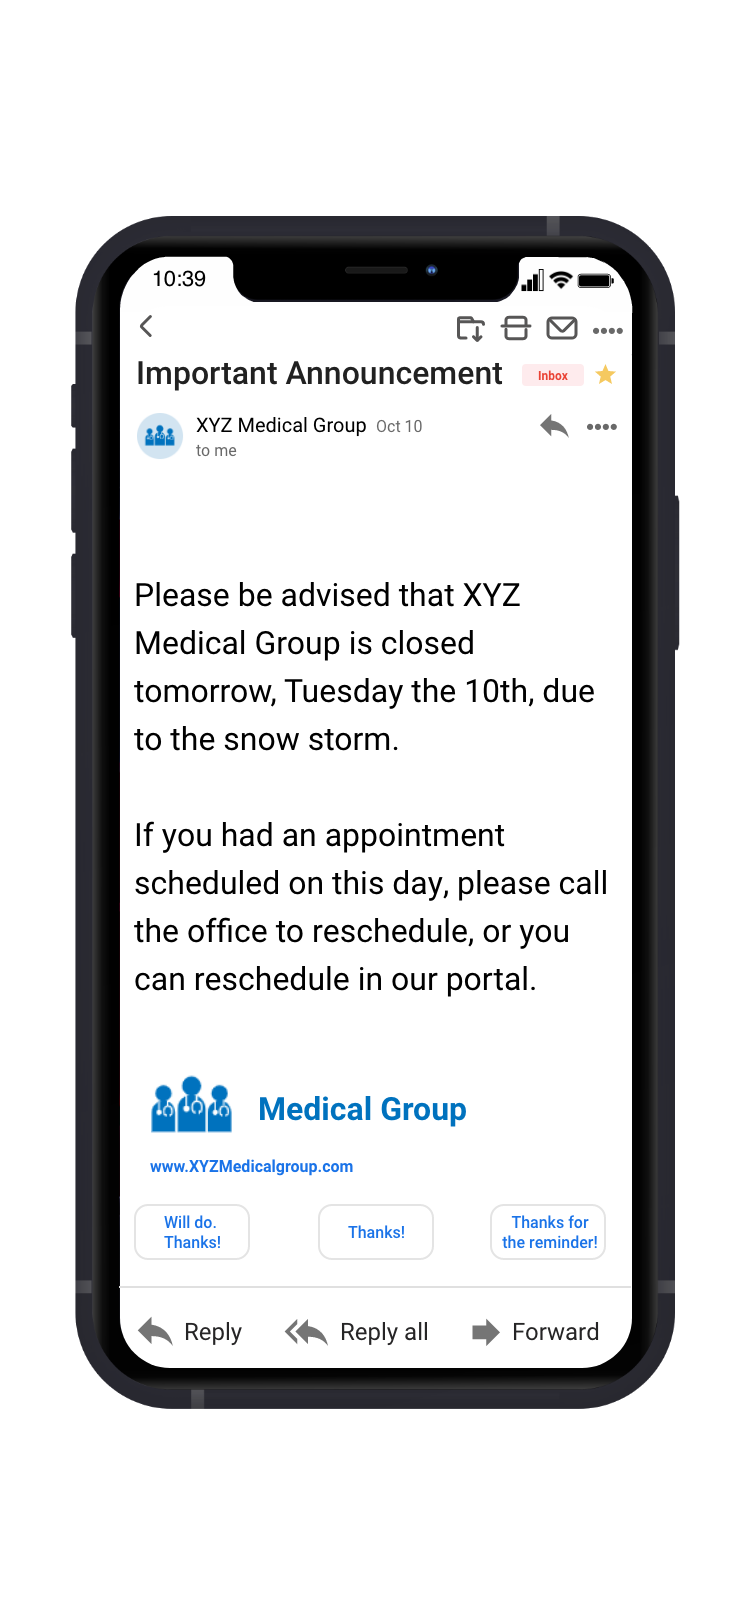 Bridge Patient Portal Software - Send broadcast messages to your patient population.